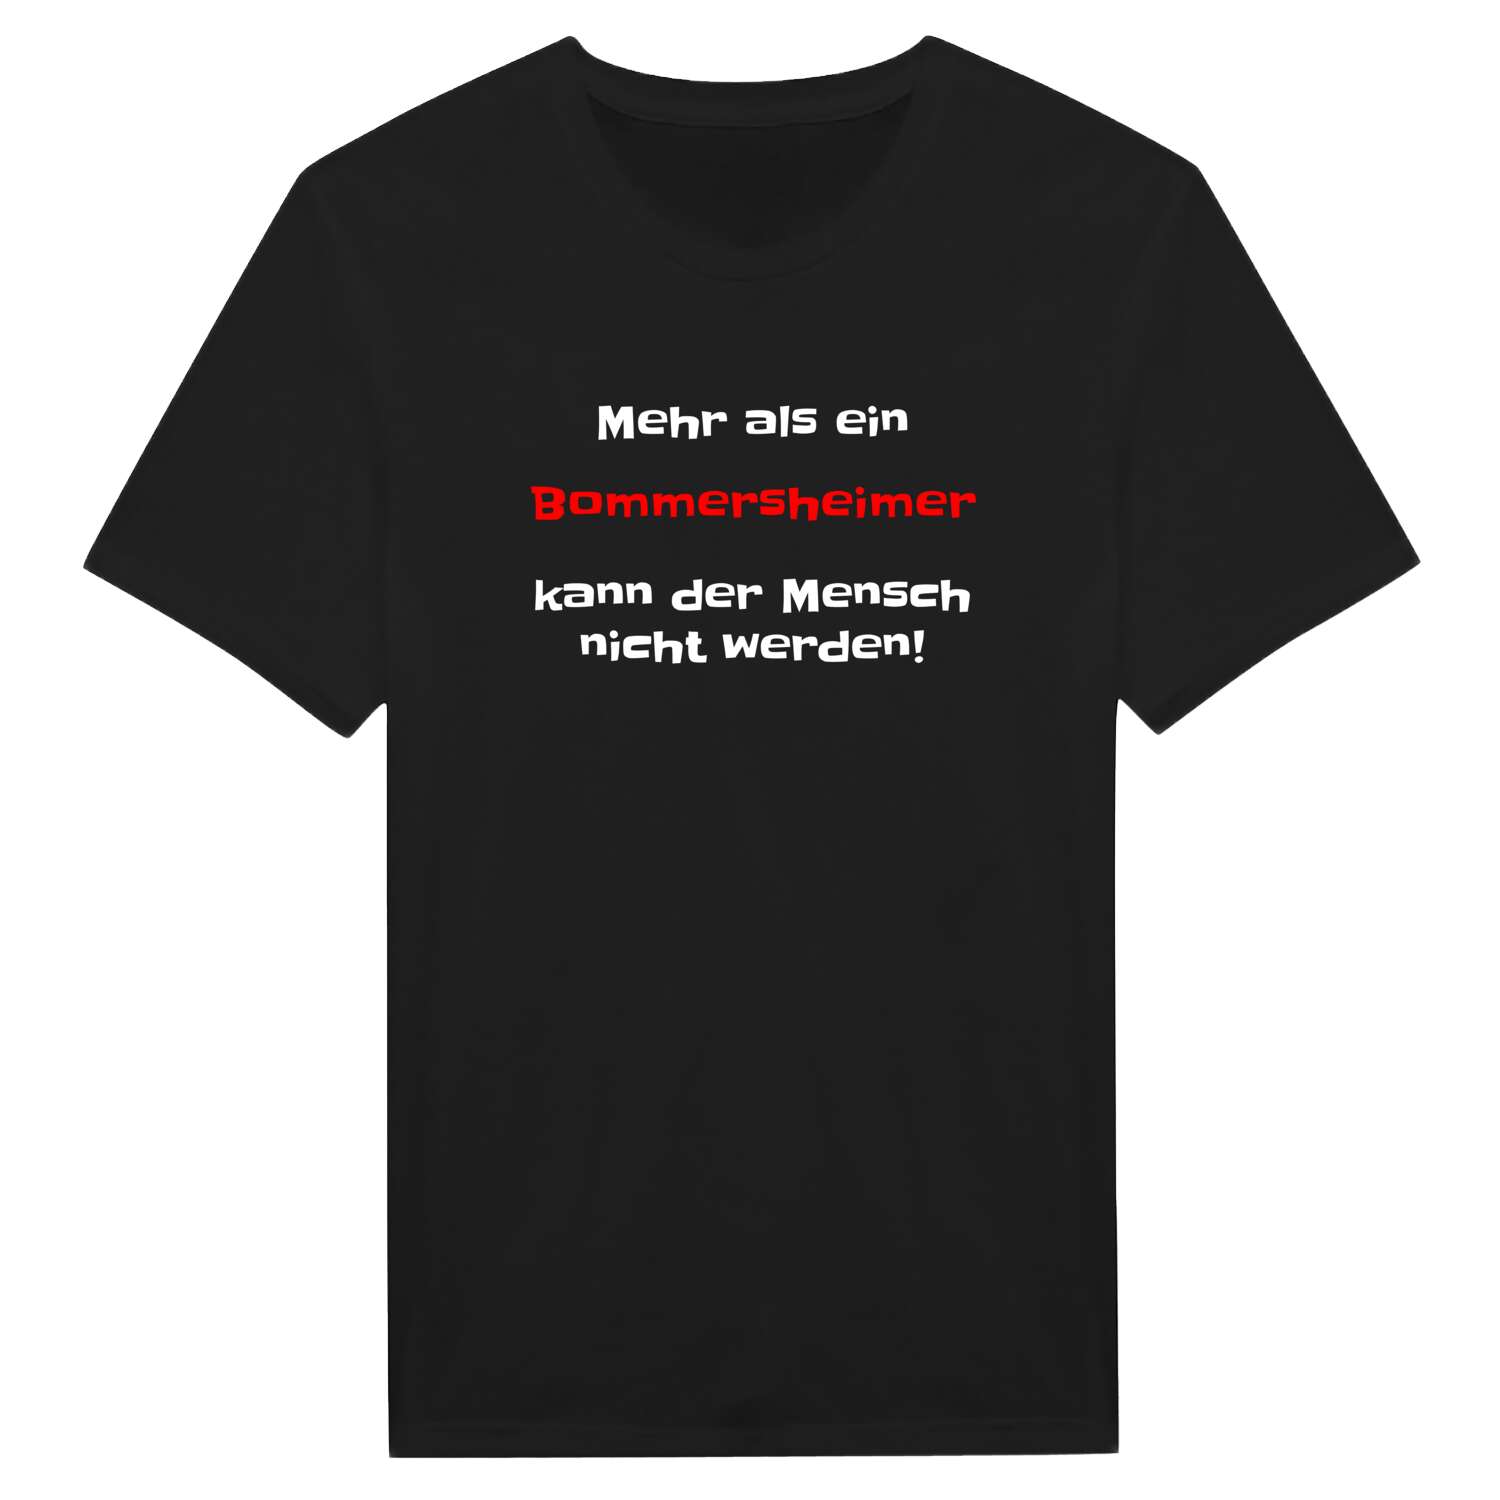 Bommersheim T-Shirt »Mehr als ein«